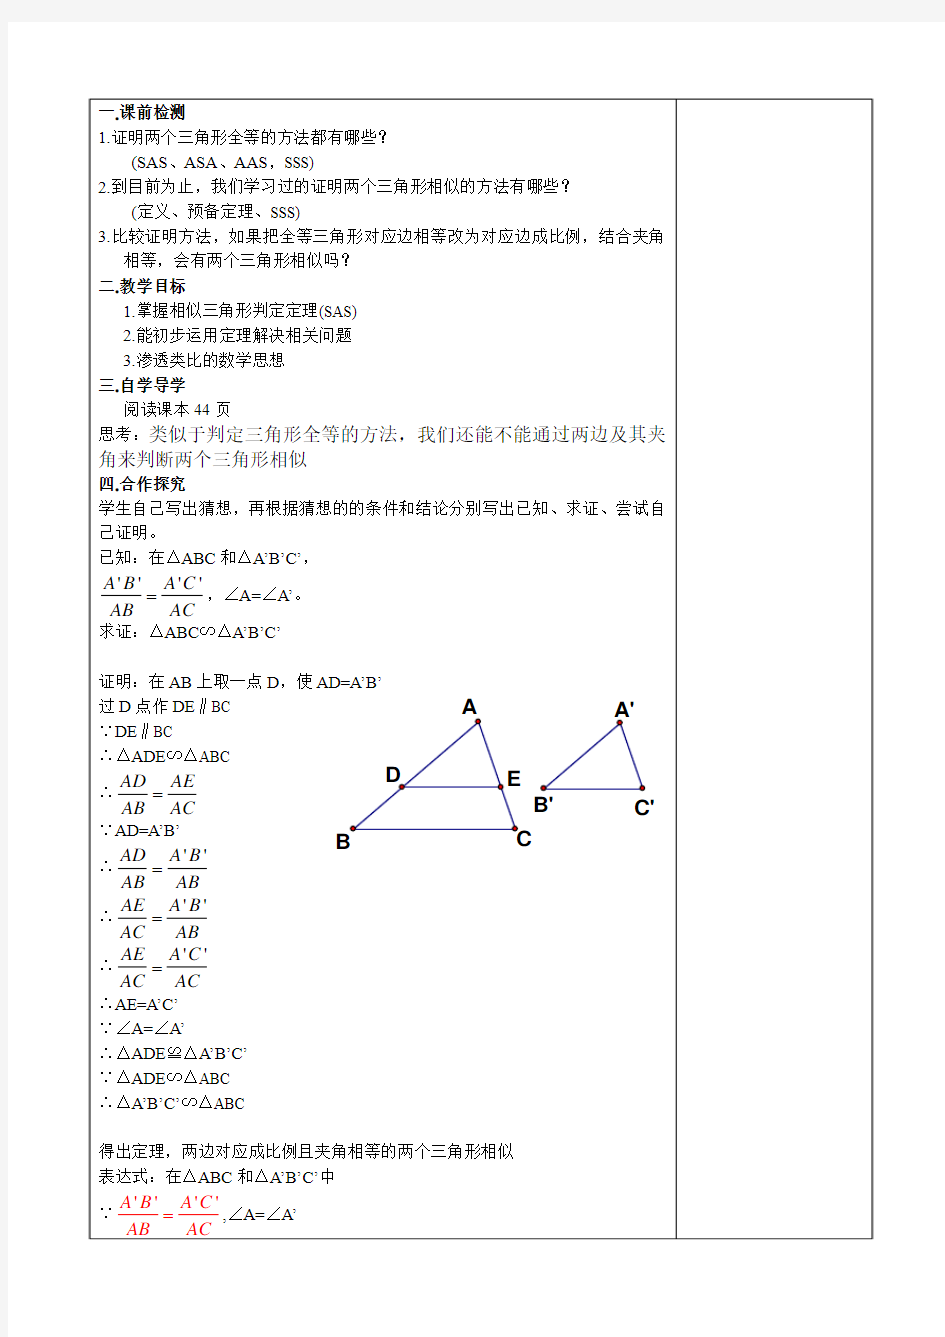 27.2.1相似三角形的判定(sas)